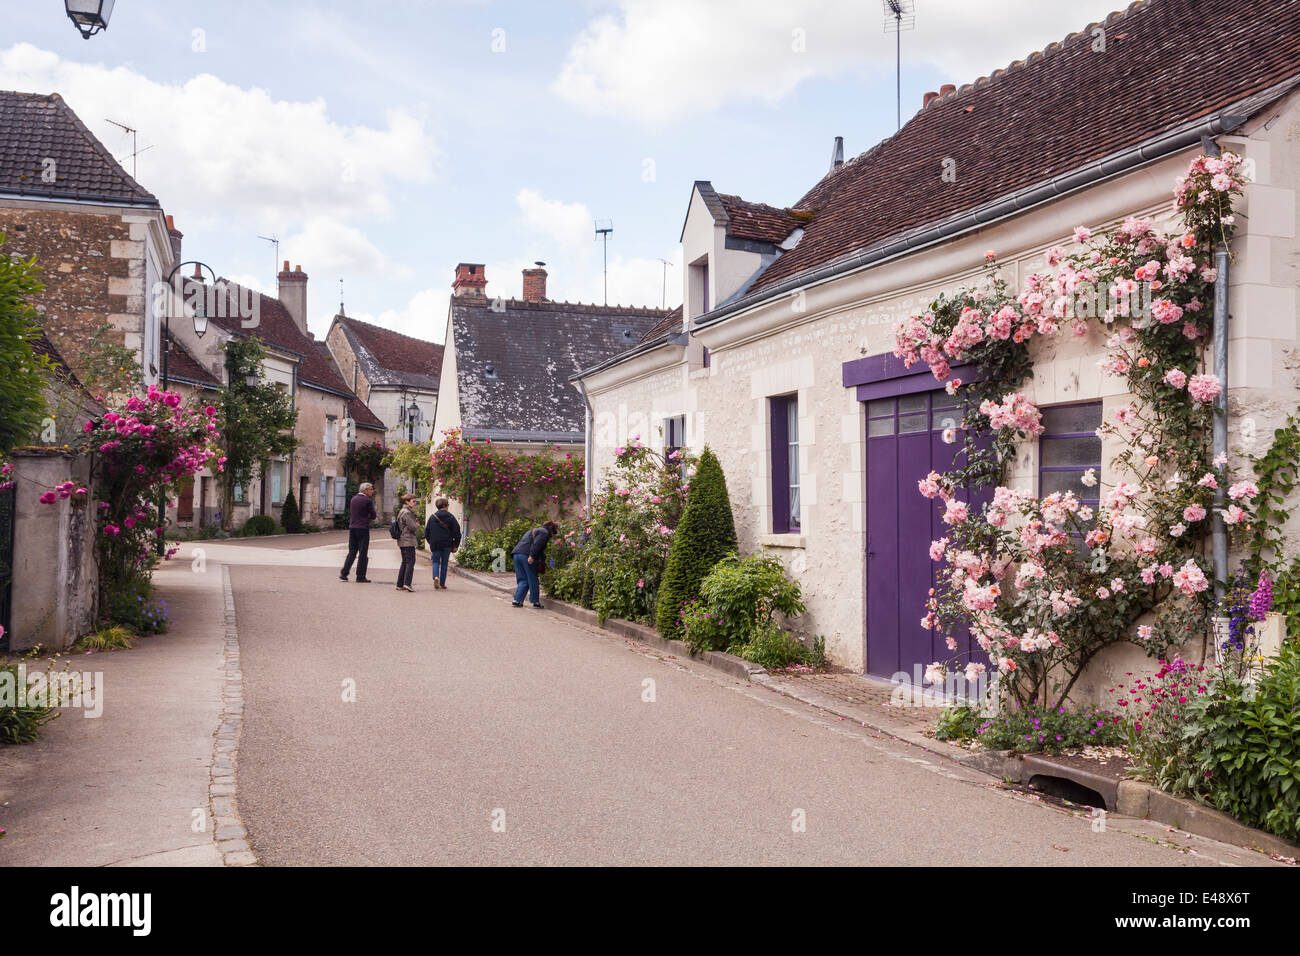 Le village de Chedigny, France. Le village détient une rose festival